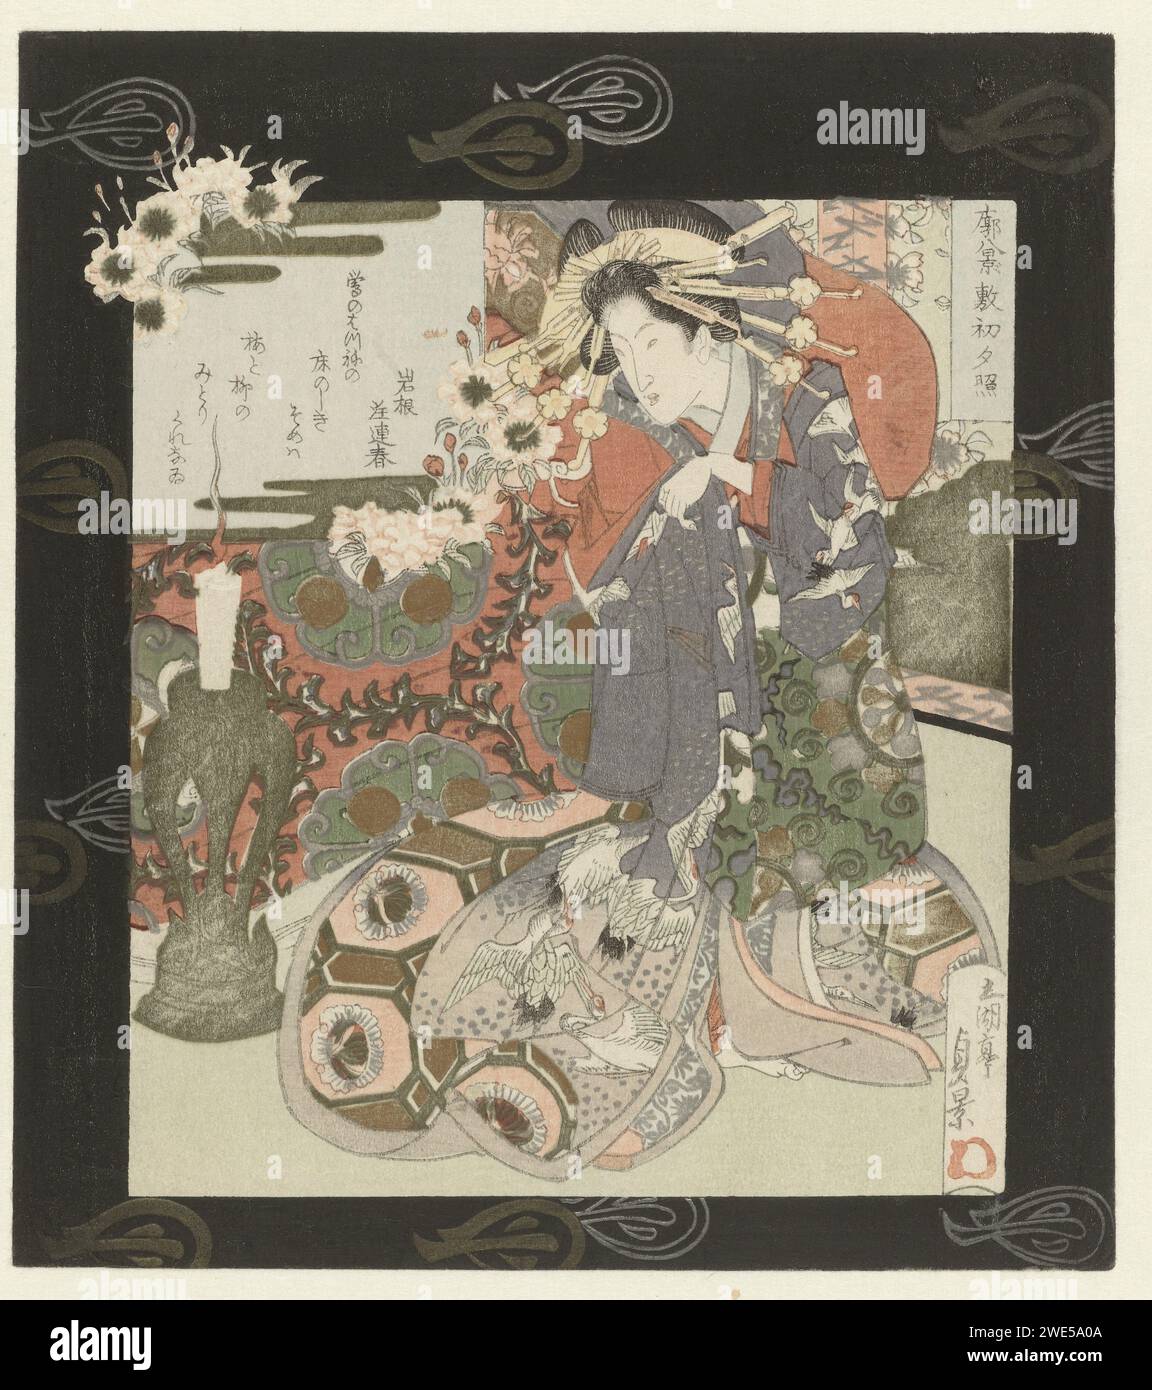 Courtisane bereitet sich auf die Nacht vor, Utagawa Sadakage, 1832 Eine Courtisane tröstet ihre lila falschen wärmer bei Kerzenschein aus, um sich auf die Nacht vorzubereiten. Mit einem Gedicht. Das Konzept der „acht Gesichter“ stammt aus der chinesischen Poesie, danach wurde es von der chinesischen Malerei übernommen, und dann auch von den Japanern. Es war eines der ersten Motive, die im japanischen Druck verwendet wurden, wo es mit berühmten Orten rund um das Biwa Meer in der Provinz ômi (acht Gesichter auf ômi) kombiniert wurde, oder zum Beispiel mit der Hauptstadt Edo (acht Gesichter auf der östlichen Hauptstadt). Sie tritt auch häufig in anderen Kompositionen auf, wie z. B. in der Stockfoto